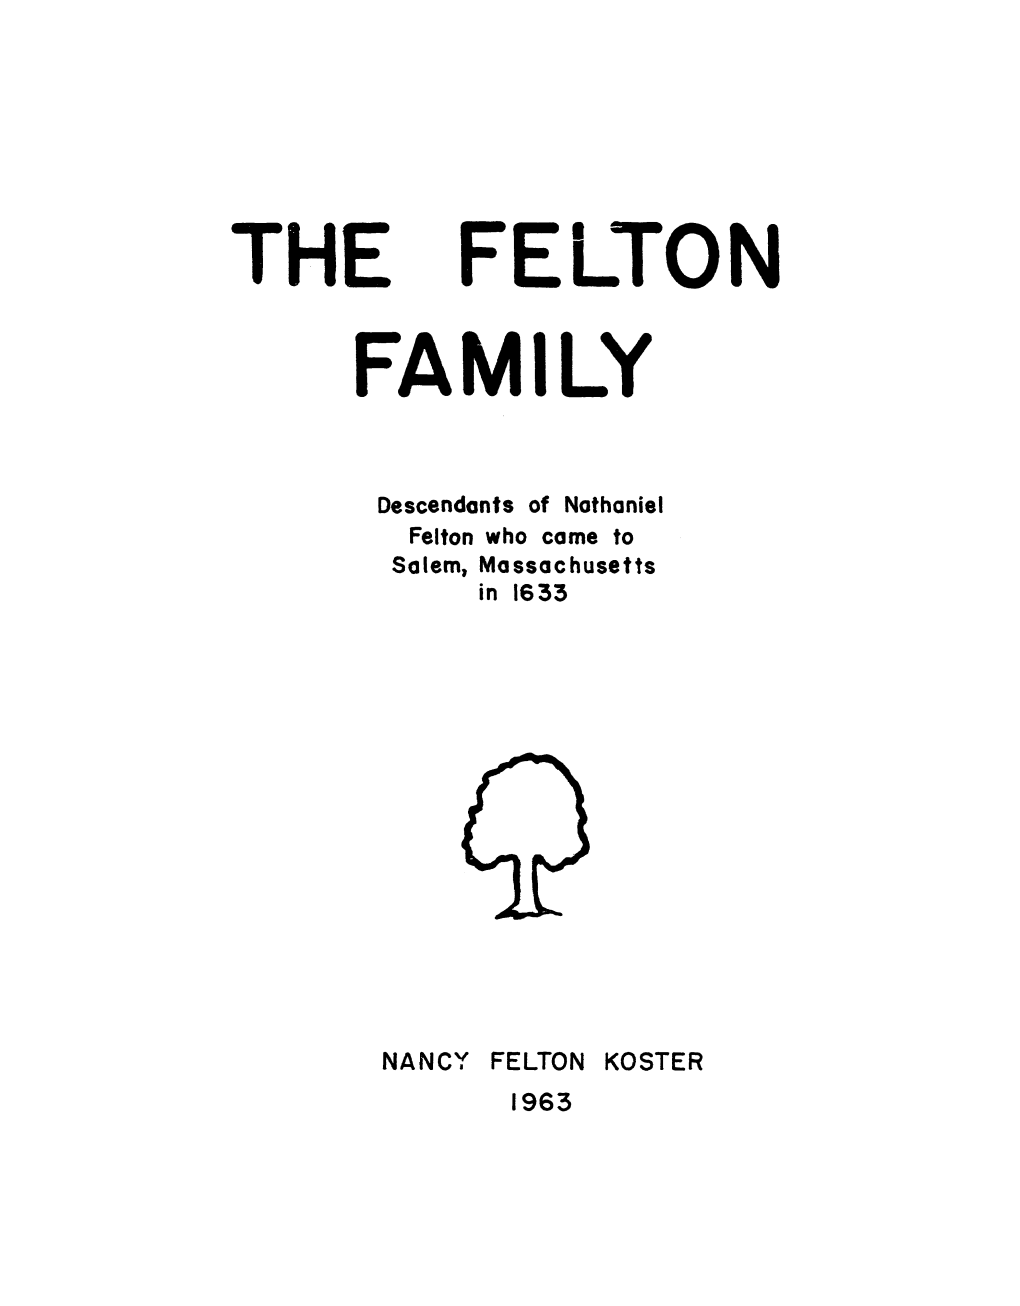 Nancy Felton Koster 1963